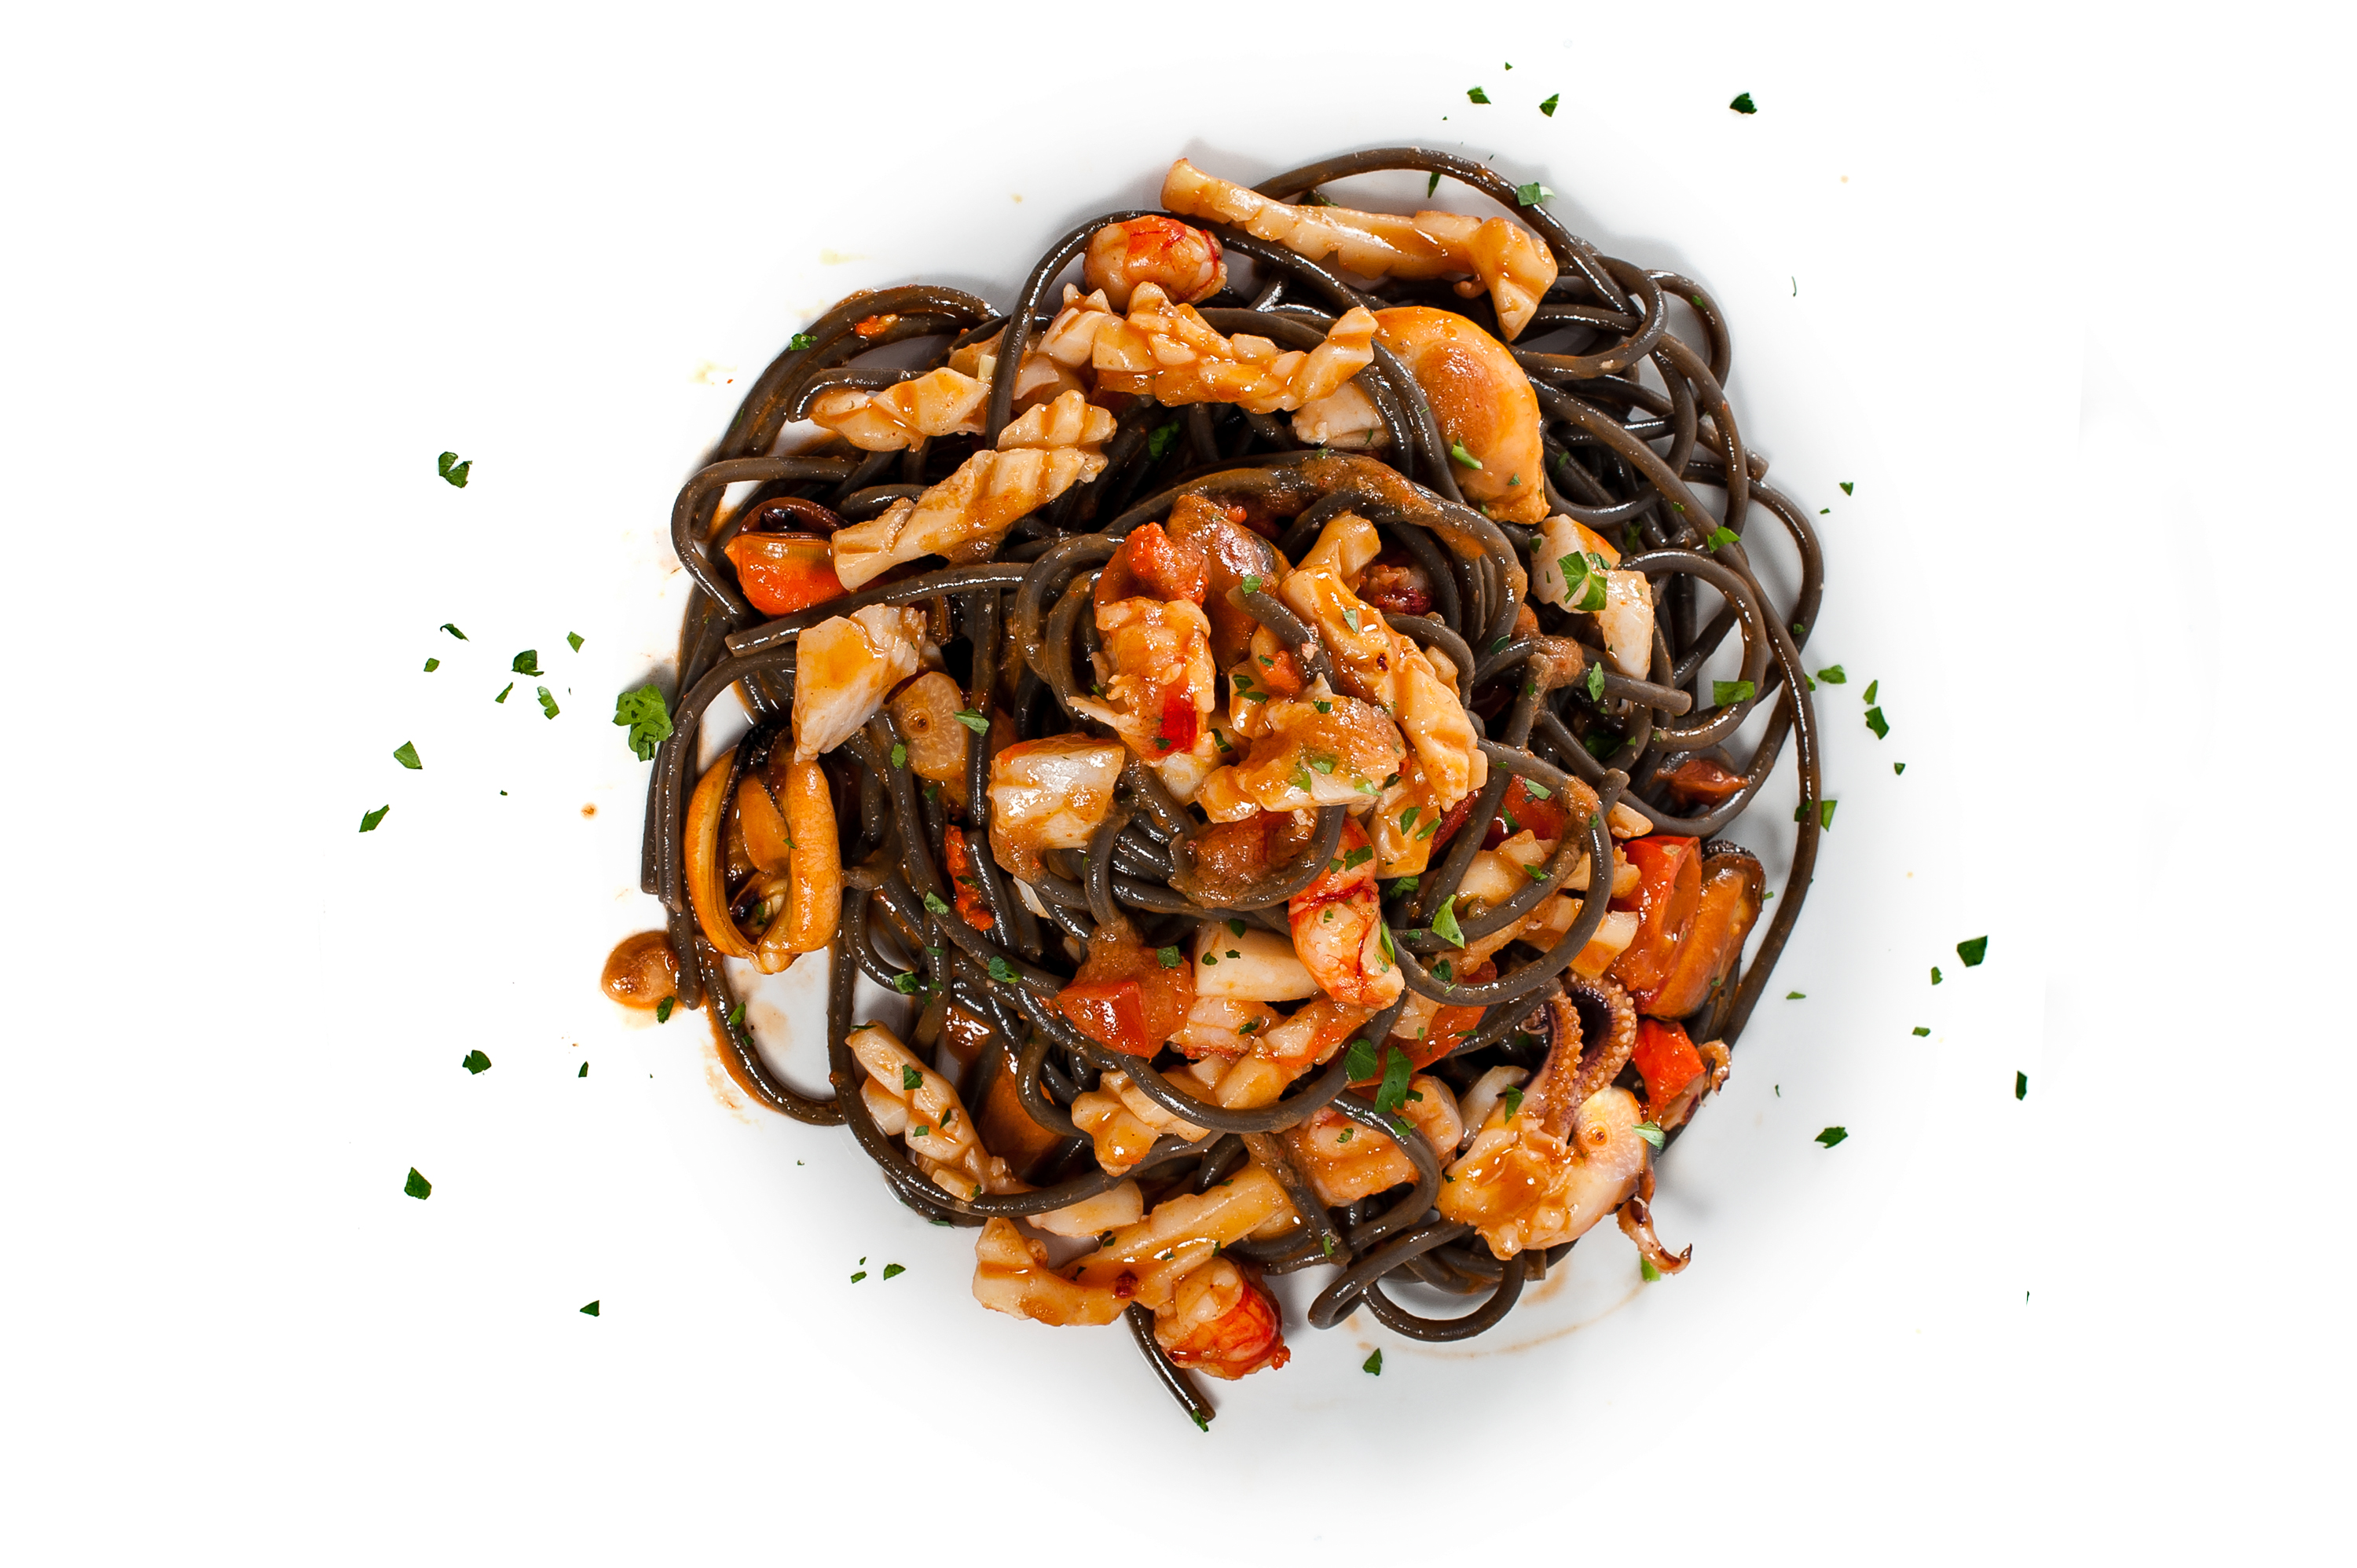 Gli spaghetti al nero di seppia con calamari a spillo, cozze, gamberi e pomodorini datterino confit sono un piatto squisito che potrete gustare al Ristorante La Scala di Cagliari. Scopri come prepararlo a casa tua.